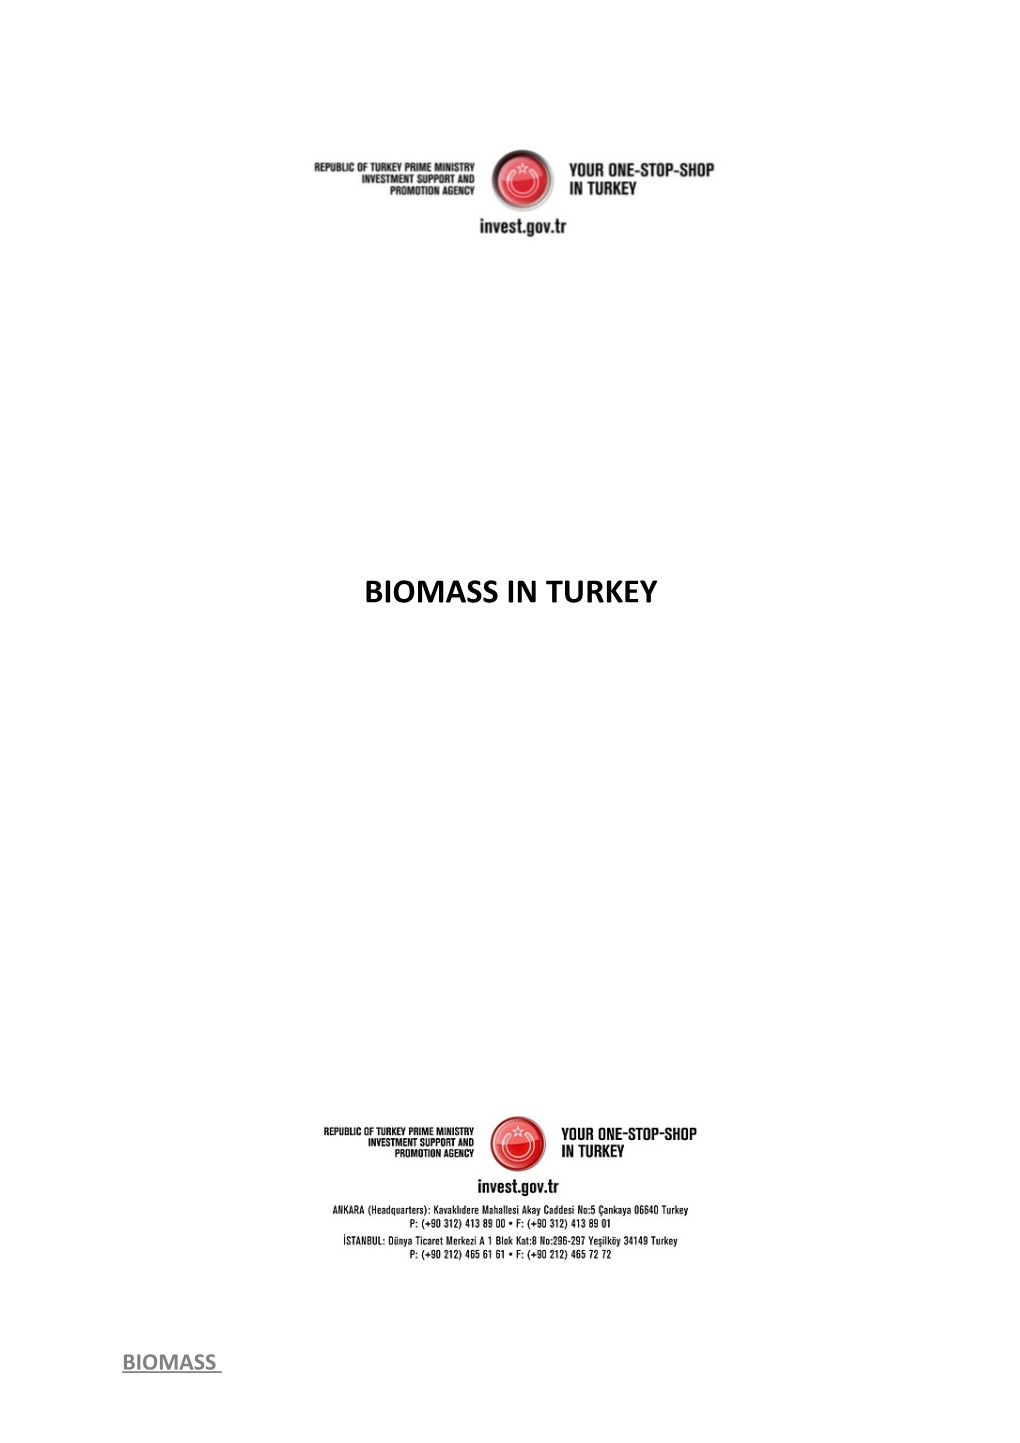 Biomass in Turkey